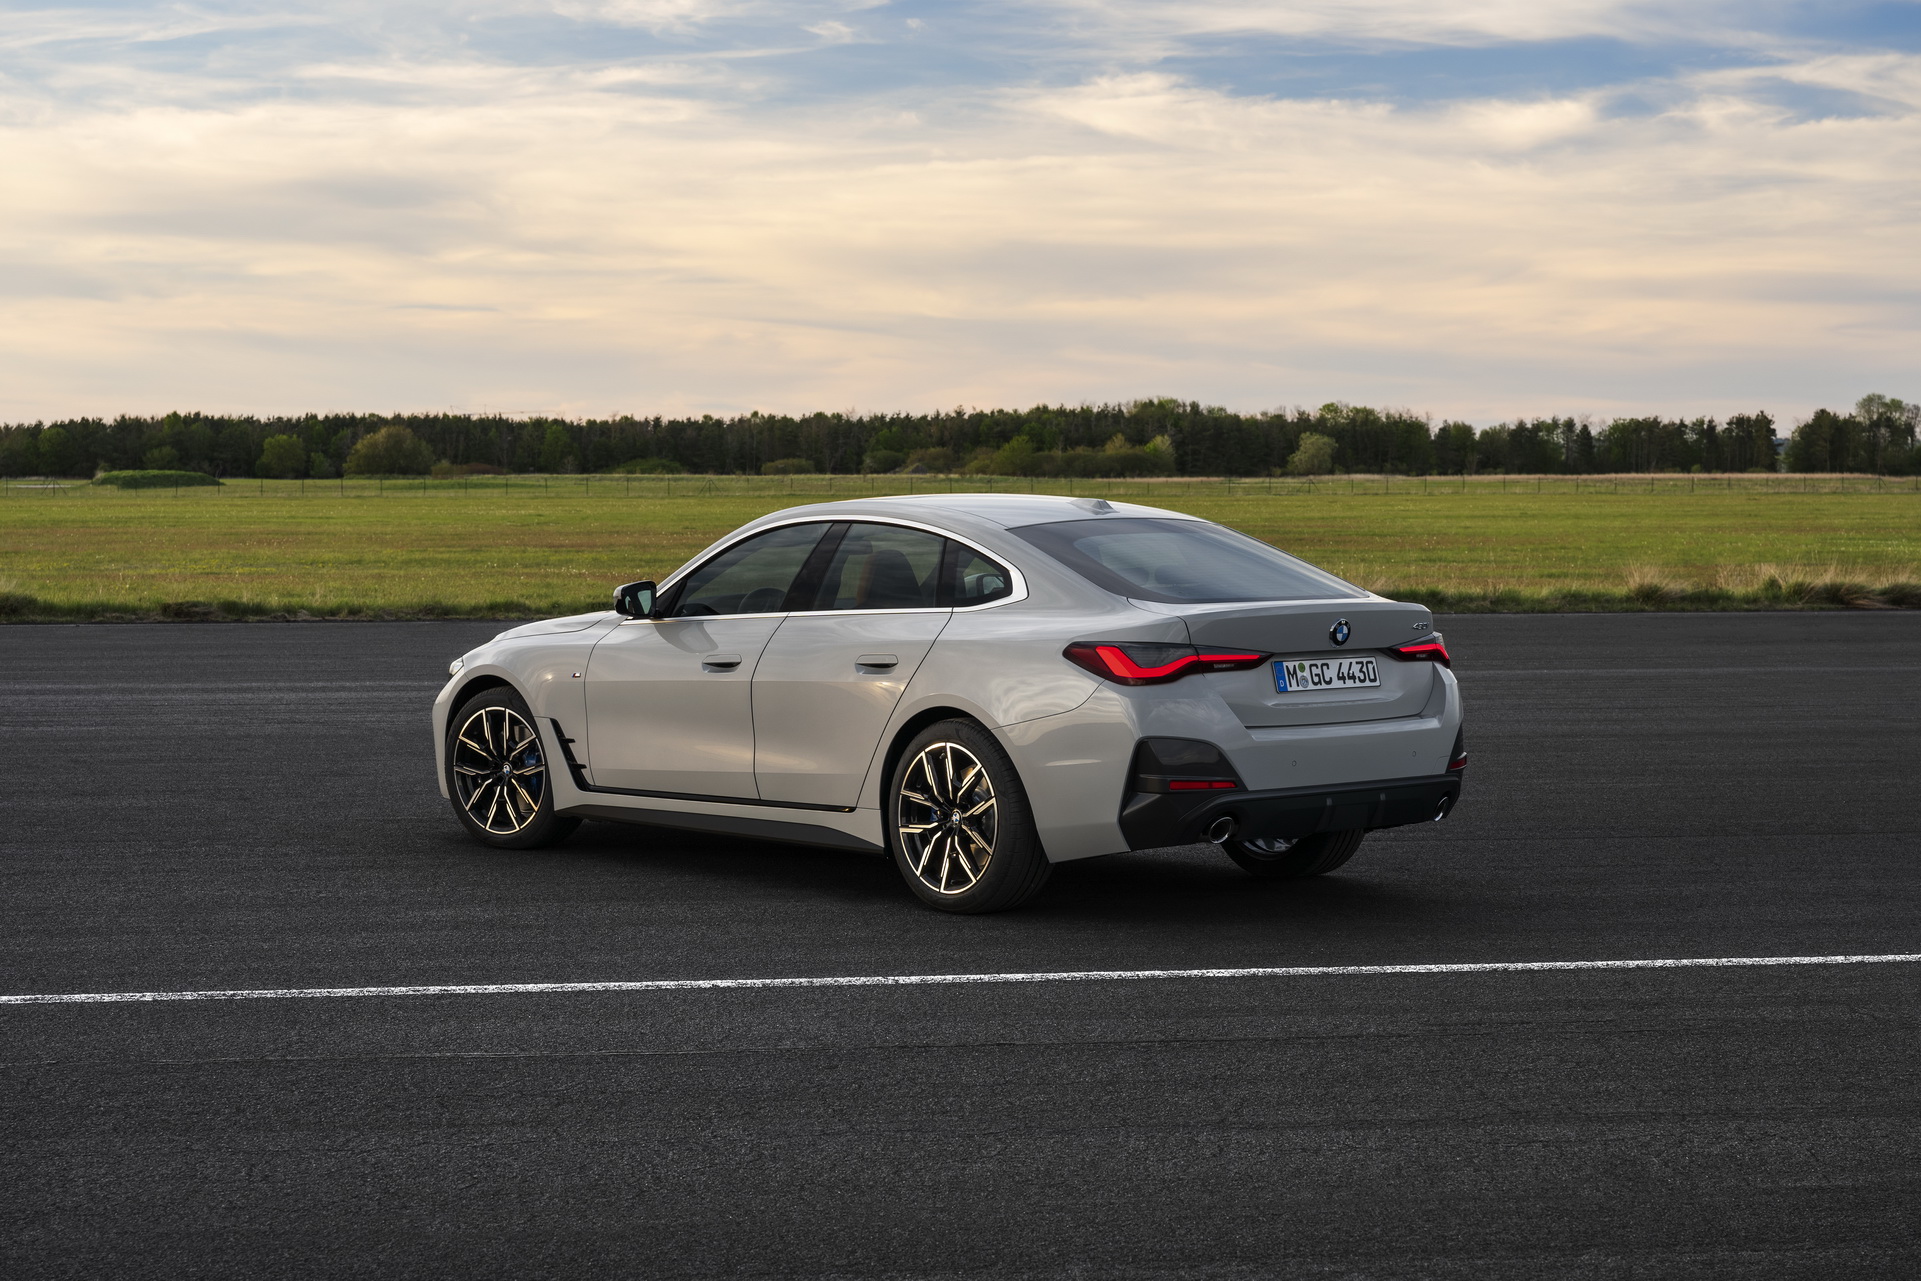 2021 BMW 4 Serisi Gran Coupe, yeni tasarım ve teknolojilerle geldi